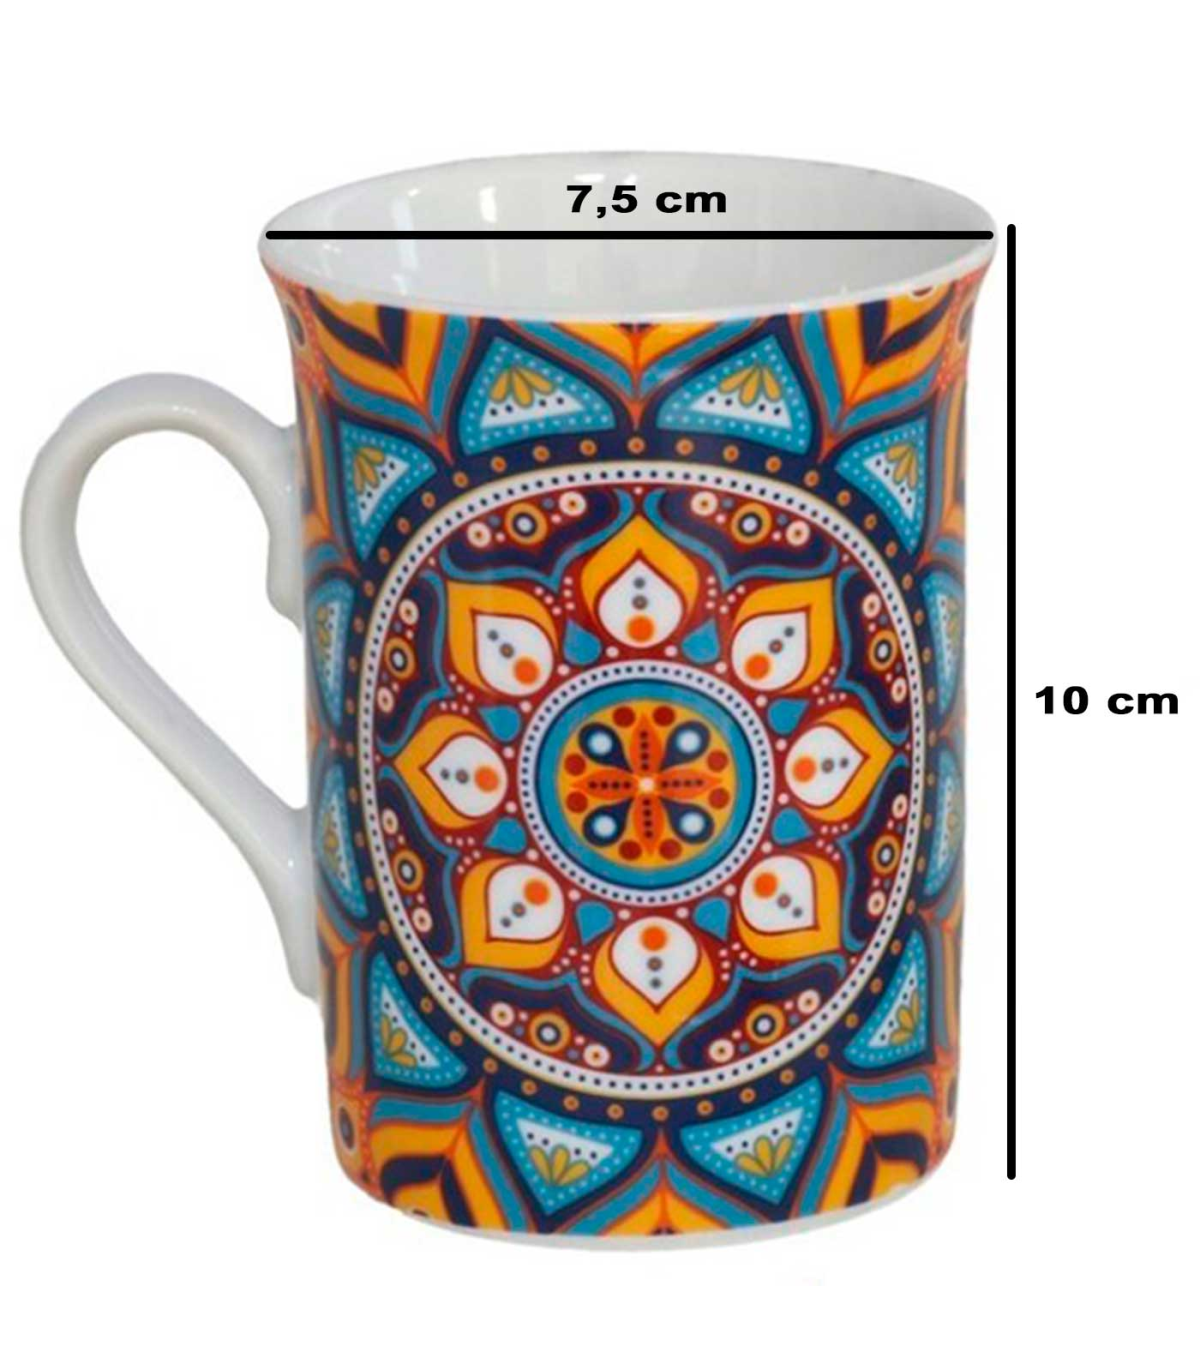 Tradineur - Taza mug de porcelana para té, infusiones, incluye tapa y filtro  de acero inoxidable, mantiene caliente la infusión